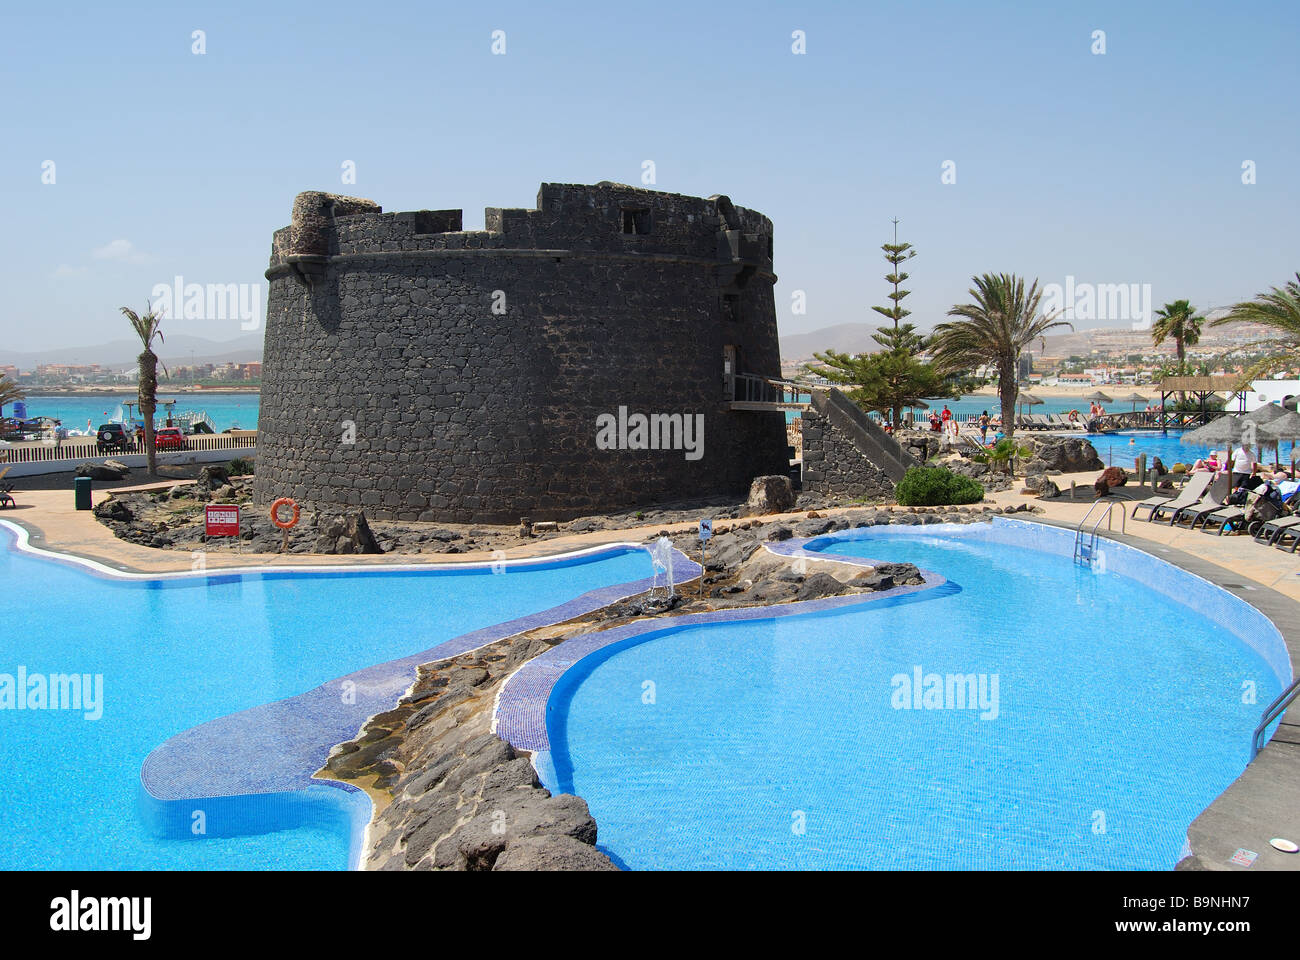 18th Century Castle and hotel pool, Barcelo Club El Castillo, Caleta de Fuste, Fuerteventura, Canary Islands, Spain Stock Photo